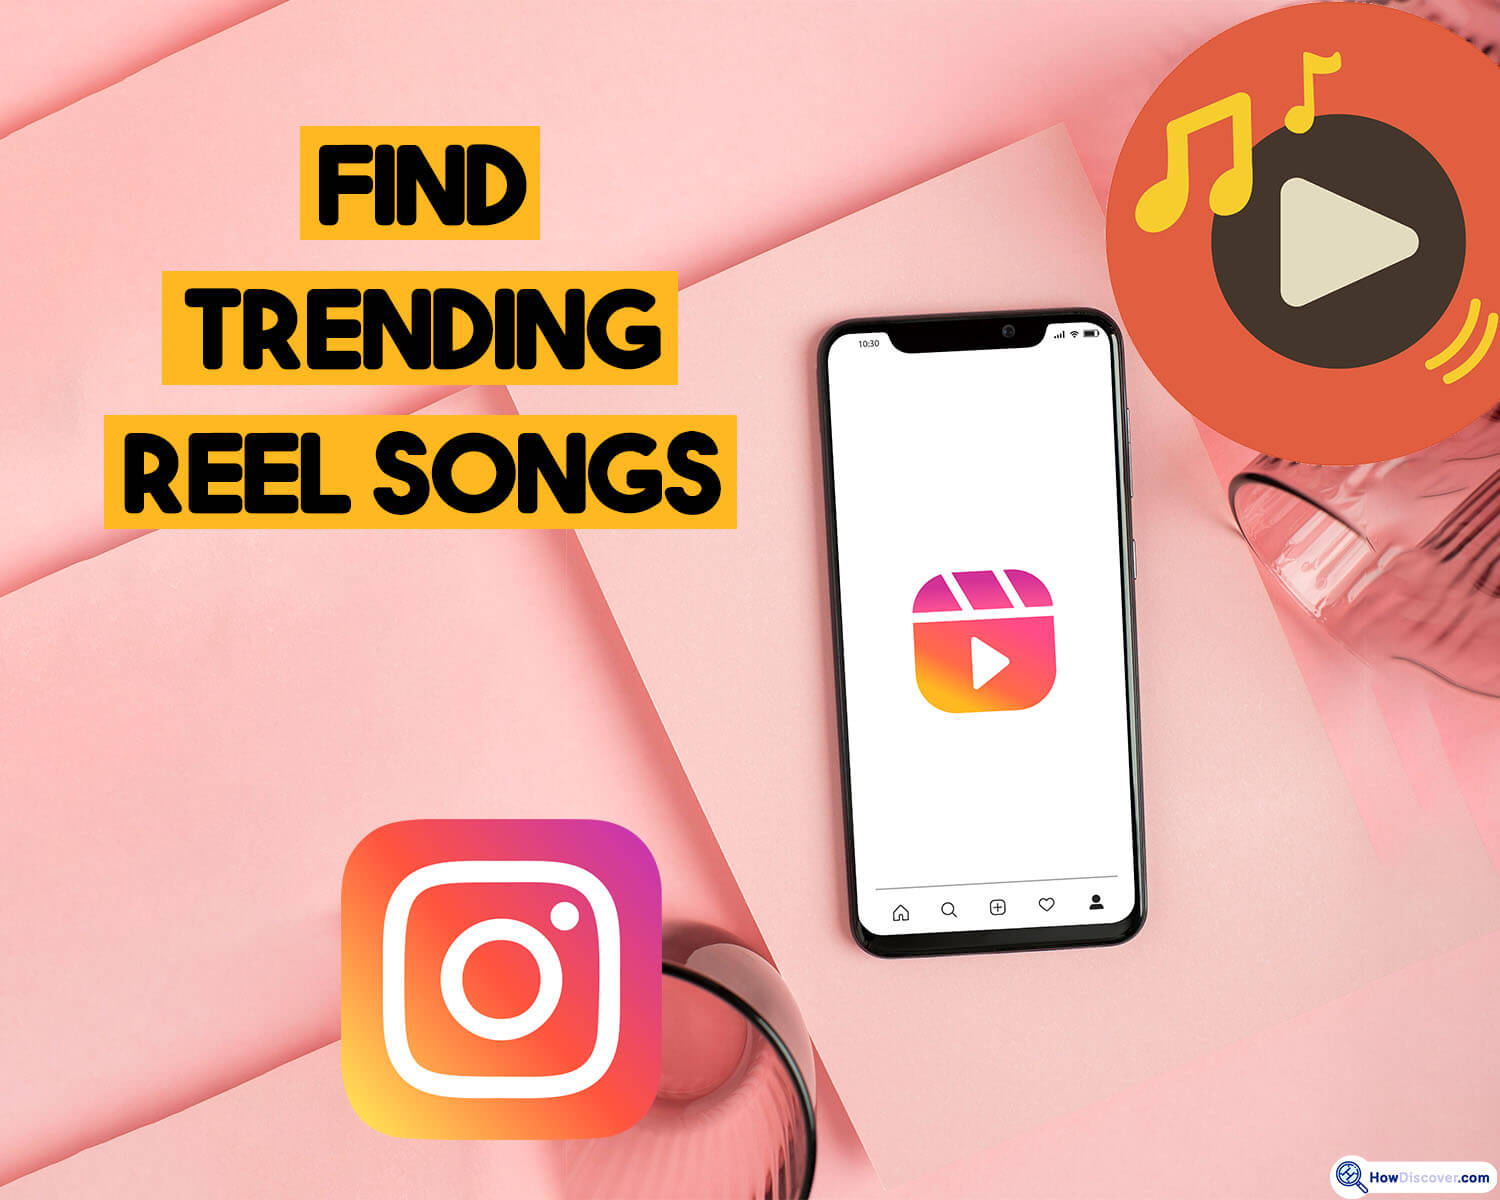 How To Find Trending Reel Songs on Instagram